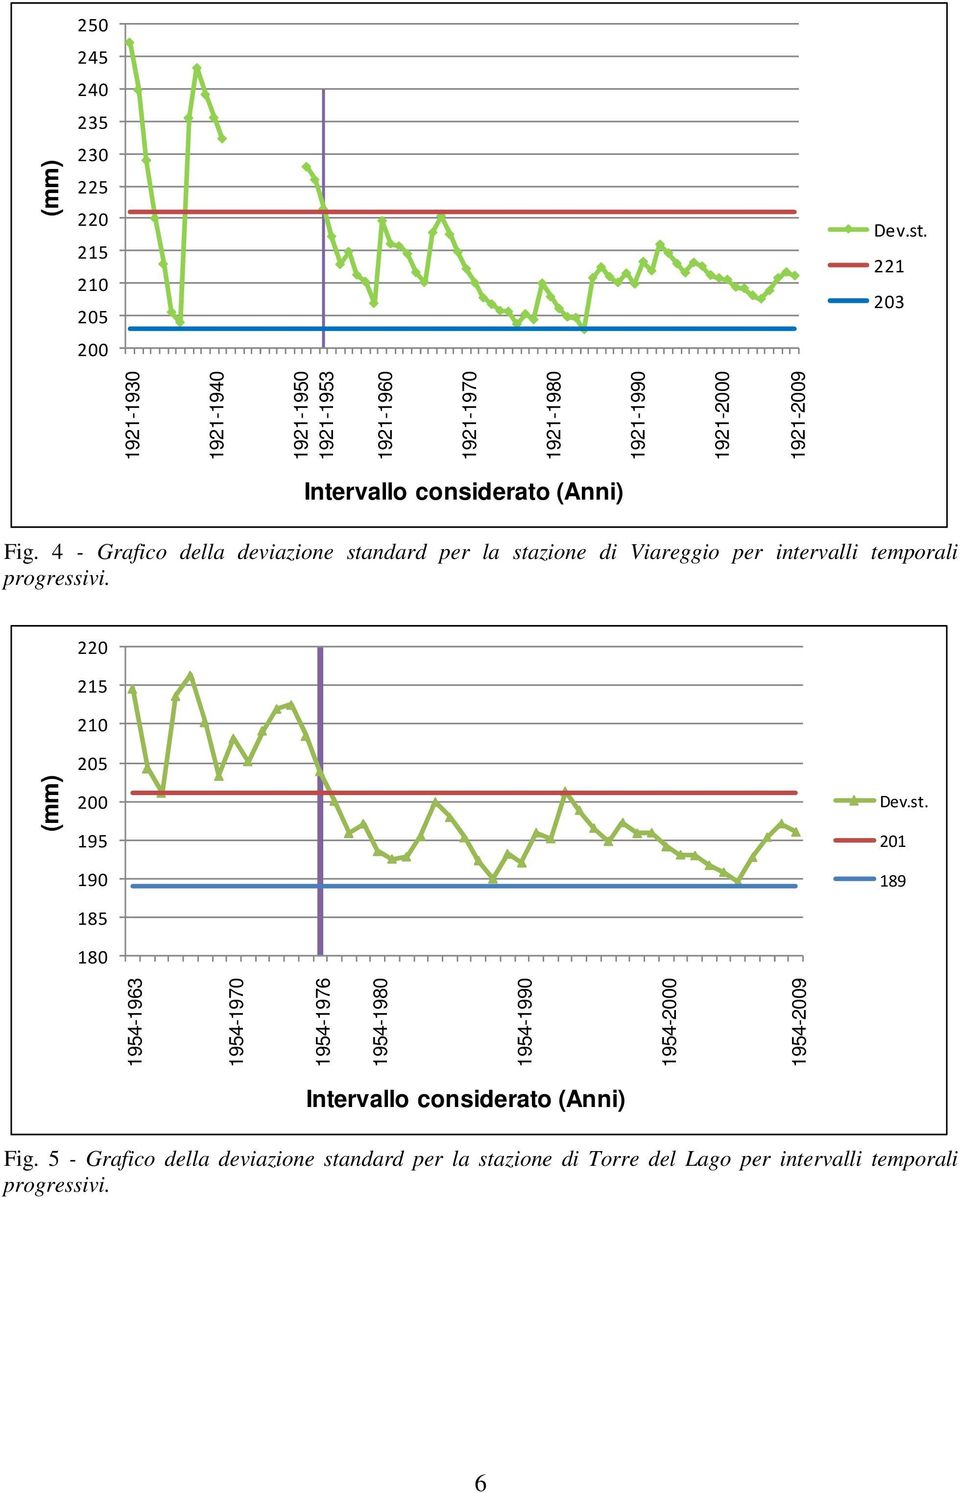 4 - Grafico della deviazione standard per la stazione di Viareggio per intervalli temporali progressivi.